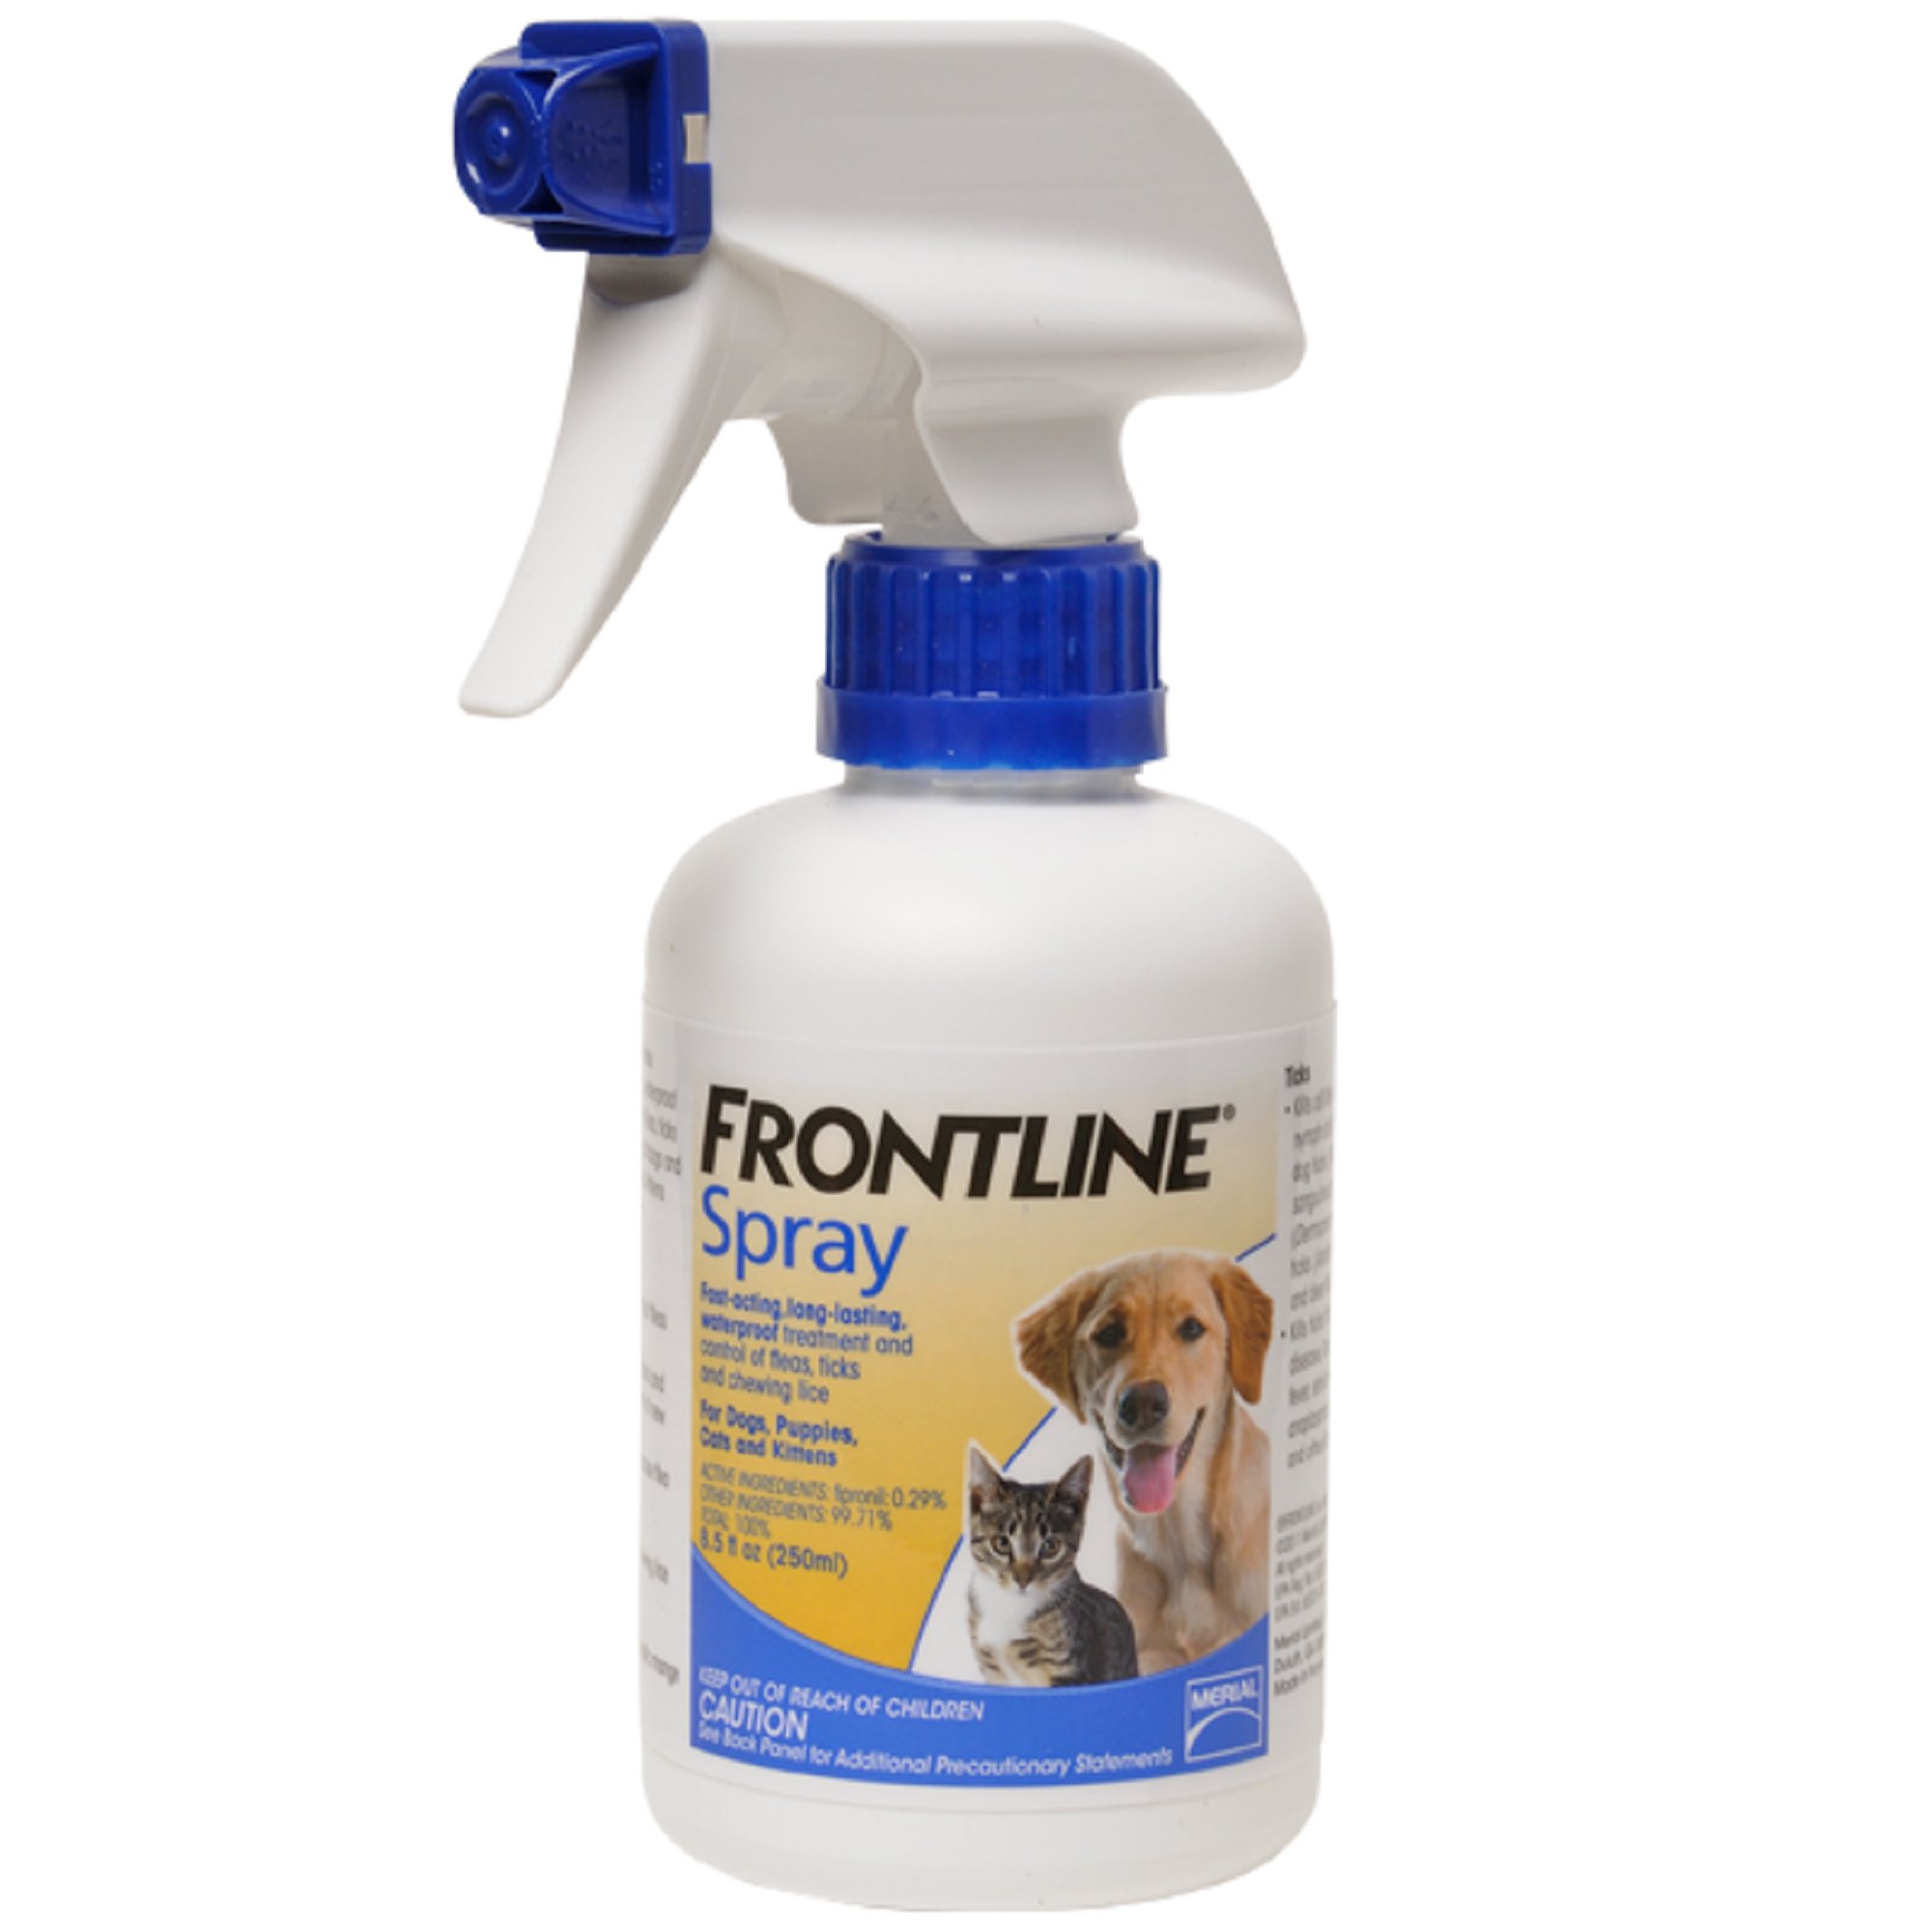 FRONTLINE Flea Spray for Dogs & Cats Petco